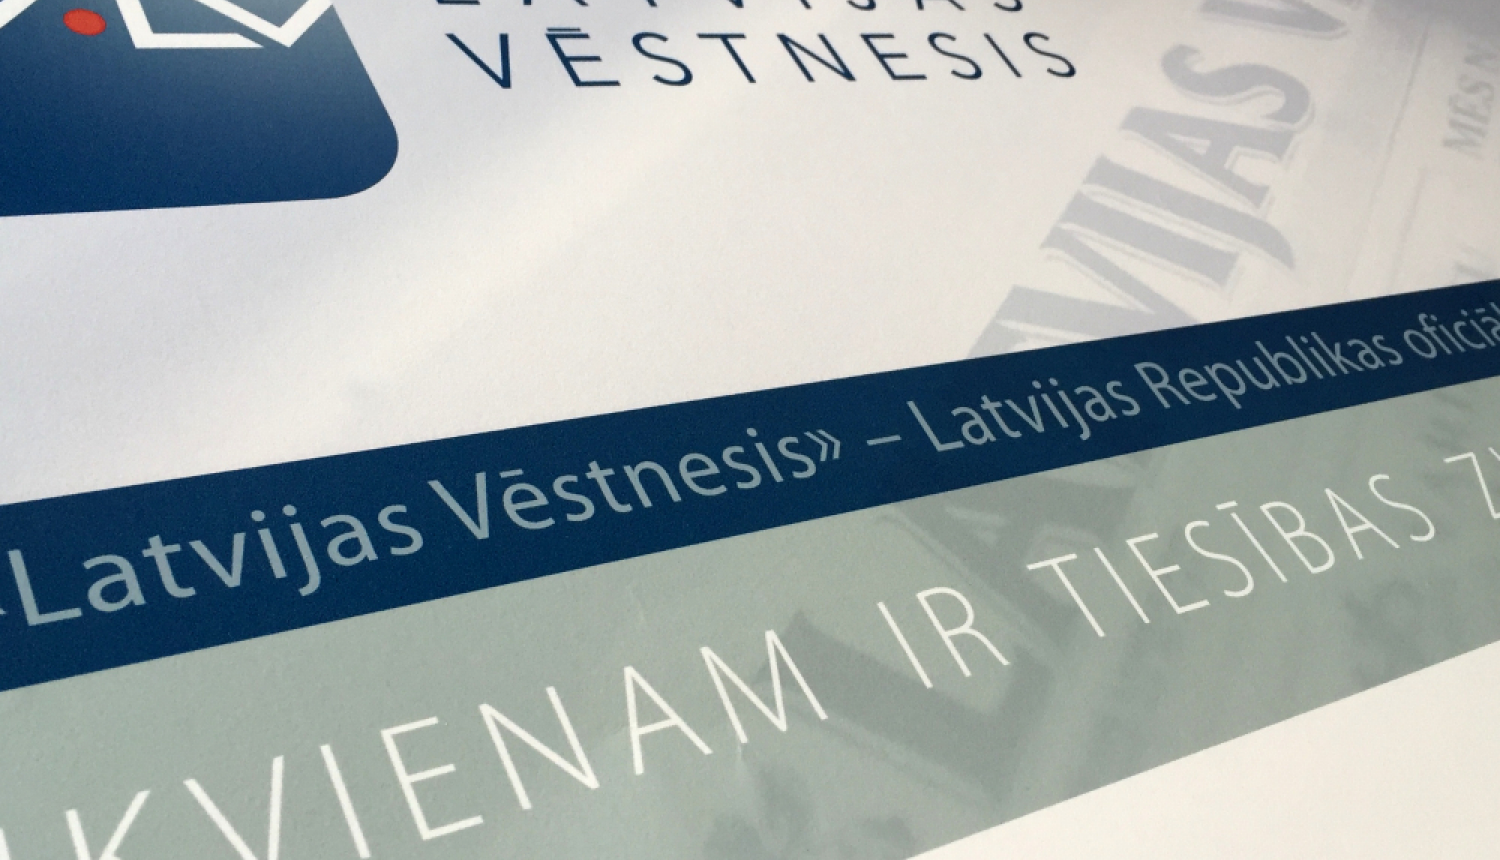 Valdība atbalsta VSIA "Latvijas Vēstnesis" ilgtermiņa darbības nepieciešamību